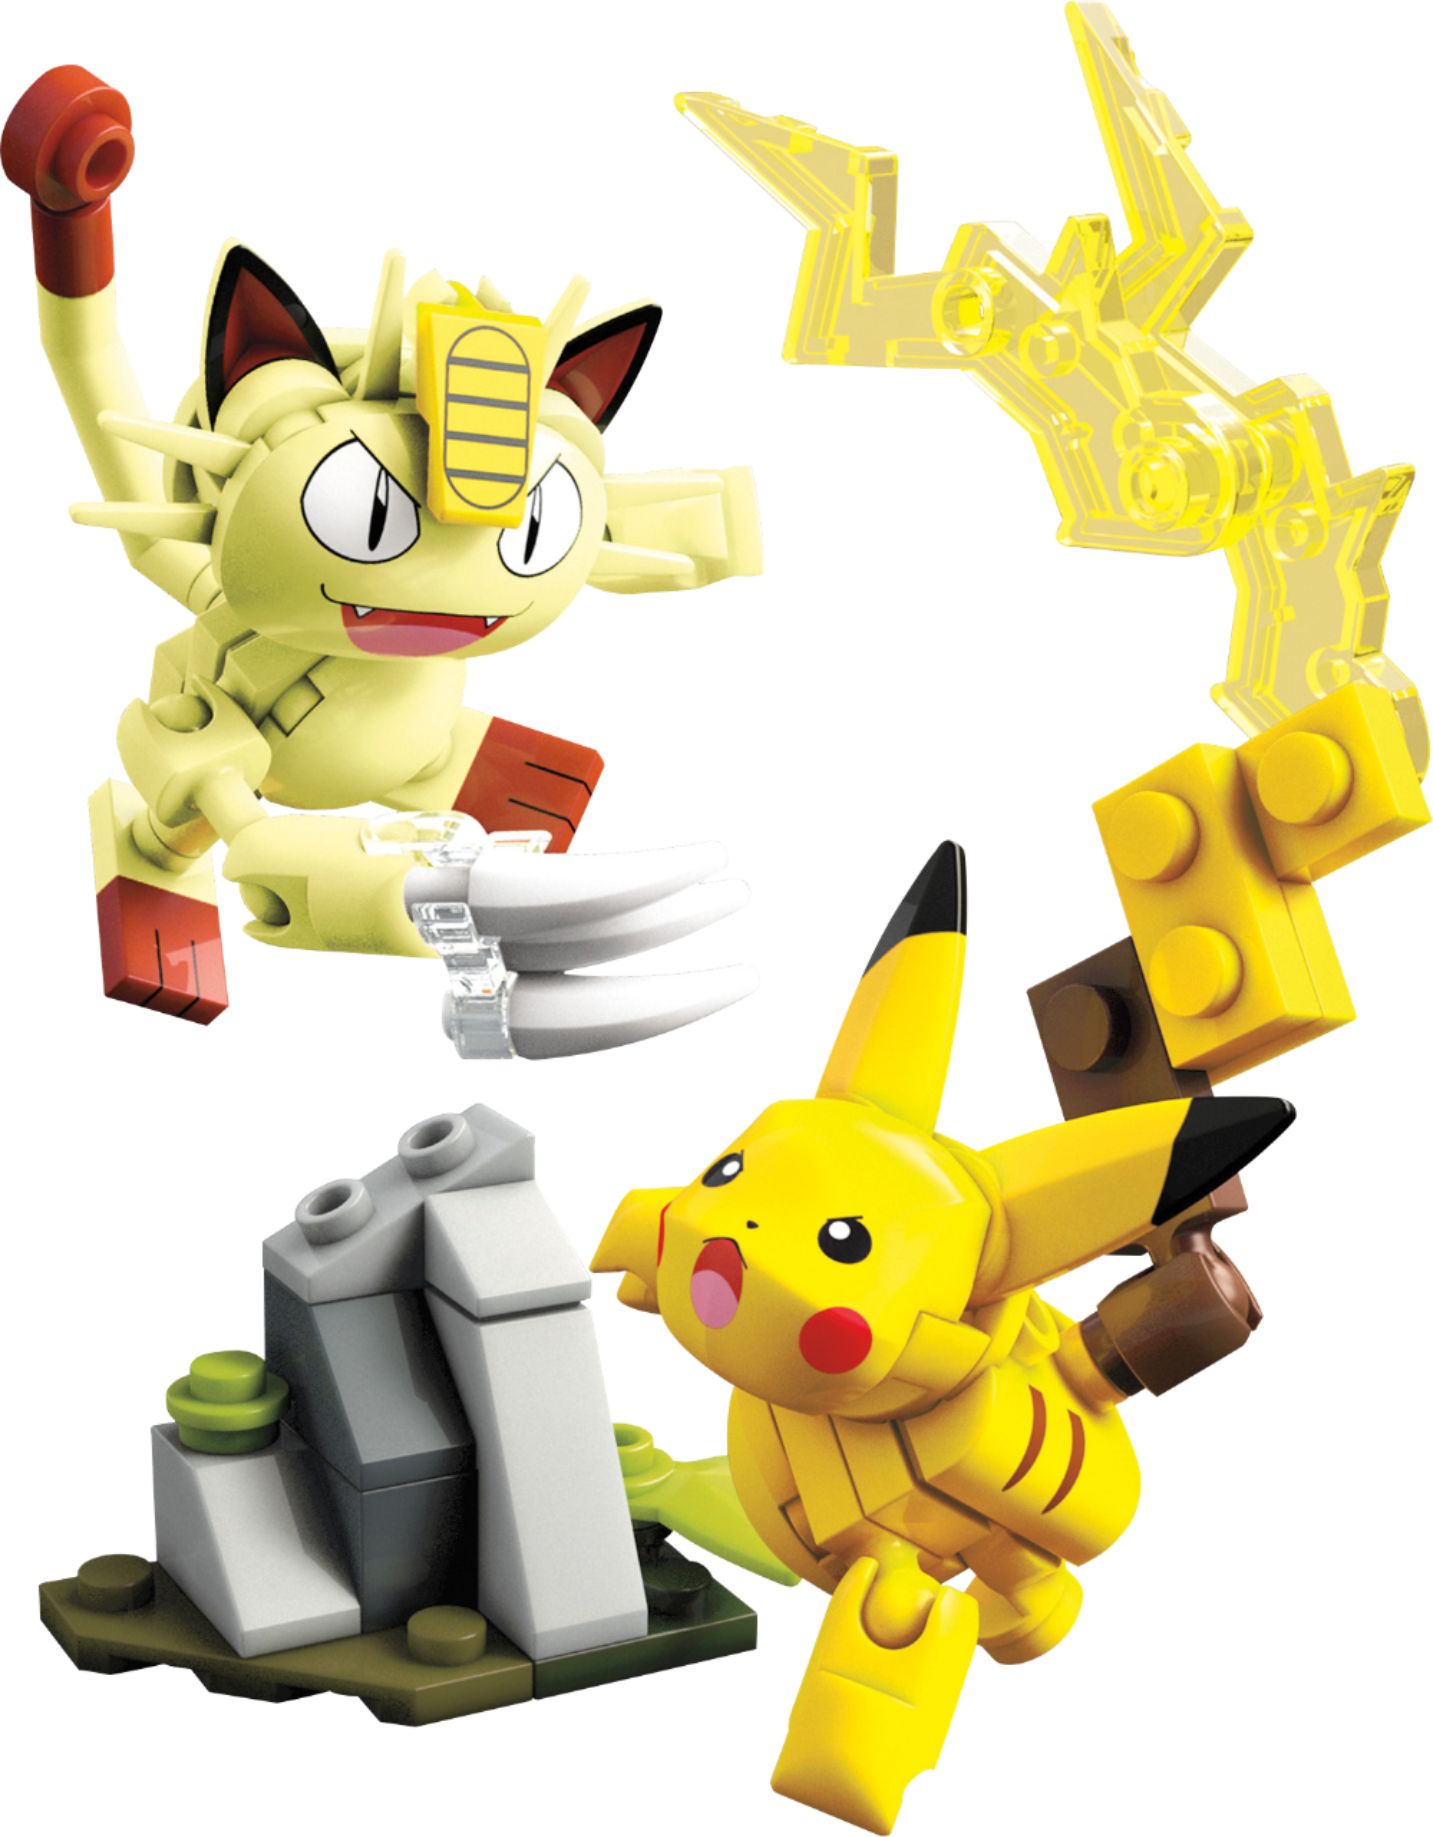 Mega Construx Pokemon Pikachu & Meowth Showdown Building Set Multicolor  FVK78 - Best Buy